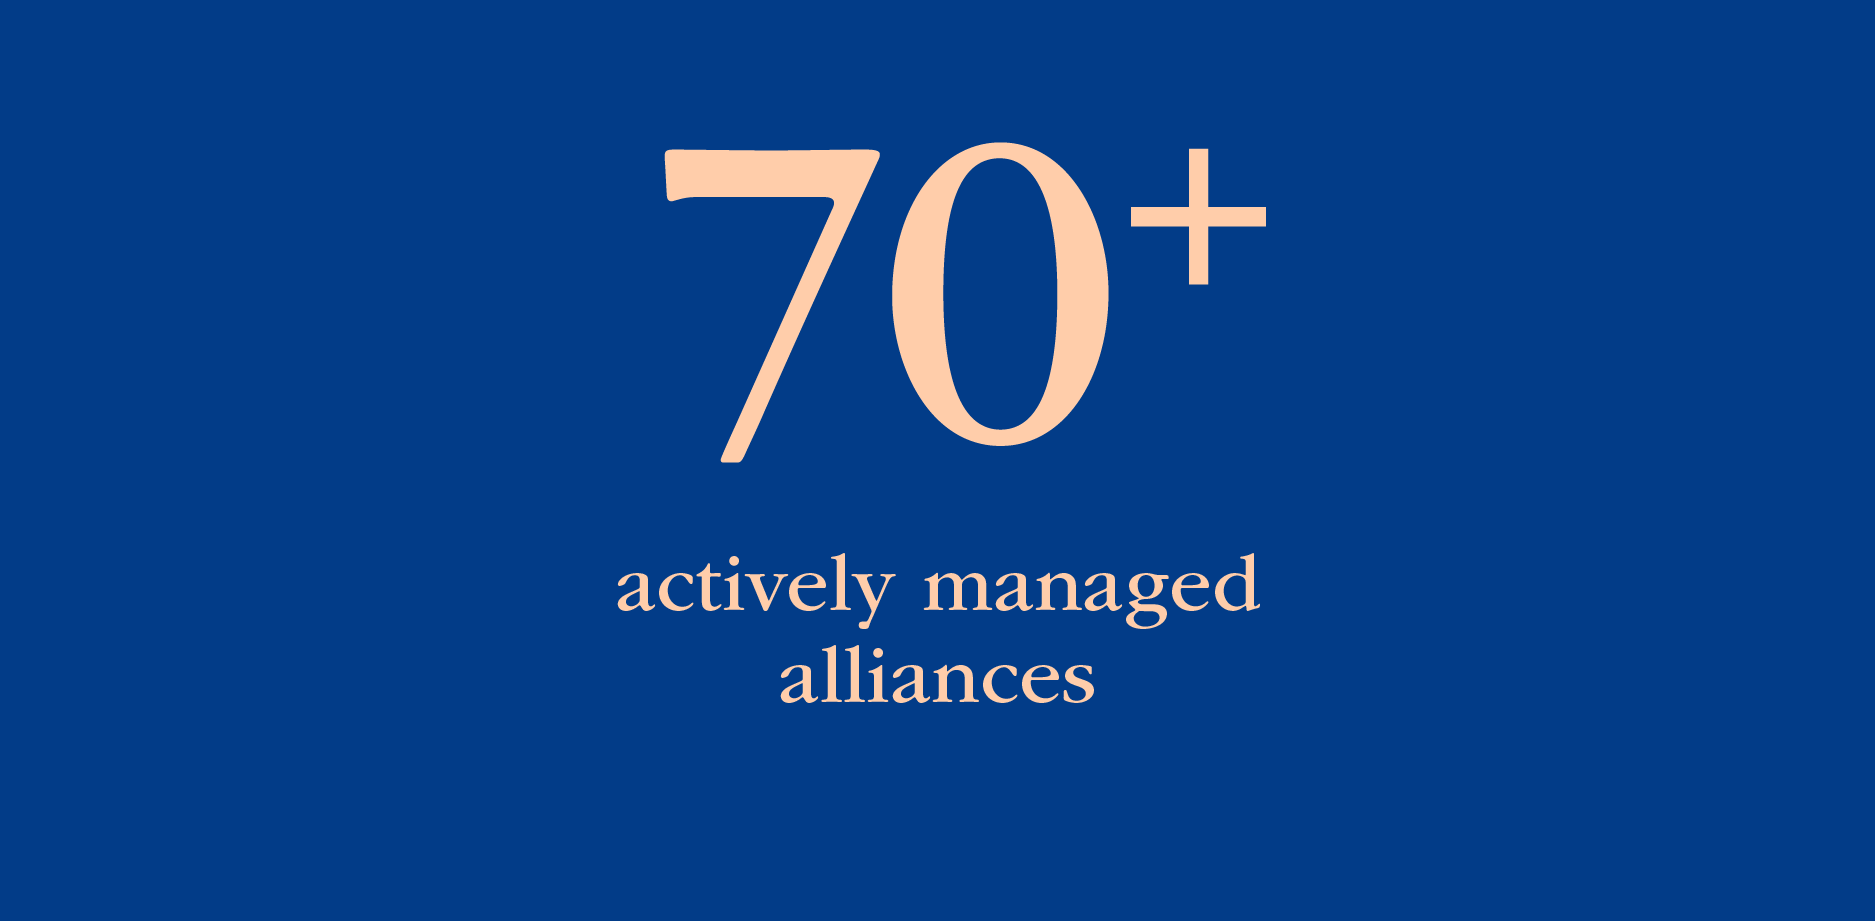 70+ actively managed alliances 